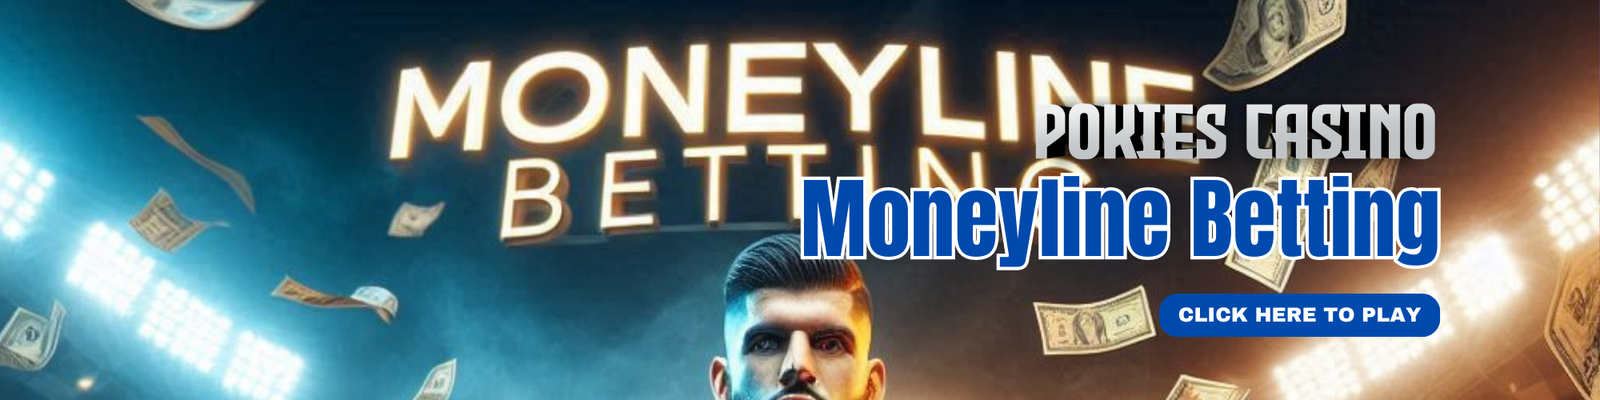 Moneyline Betting in PokiesCasino